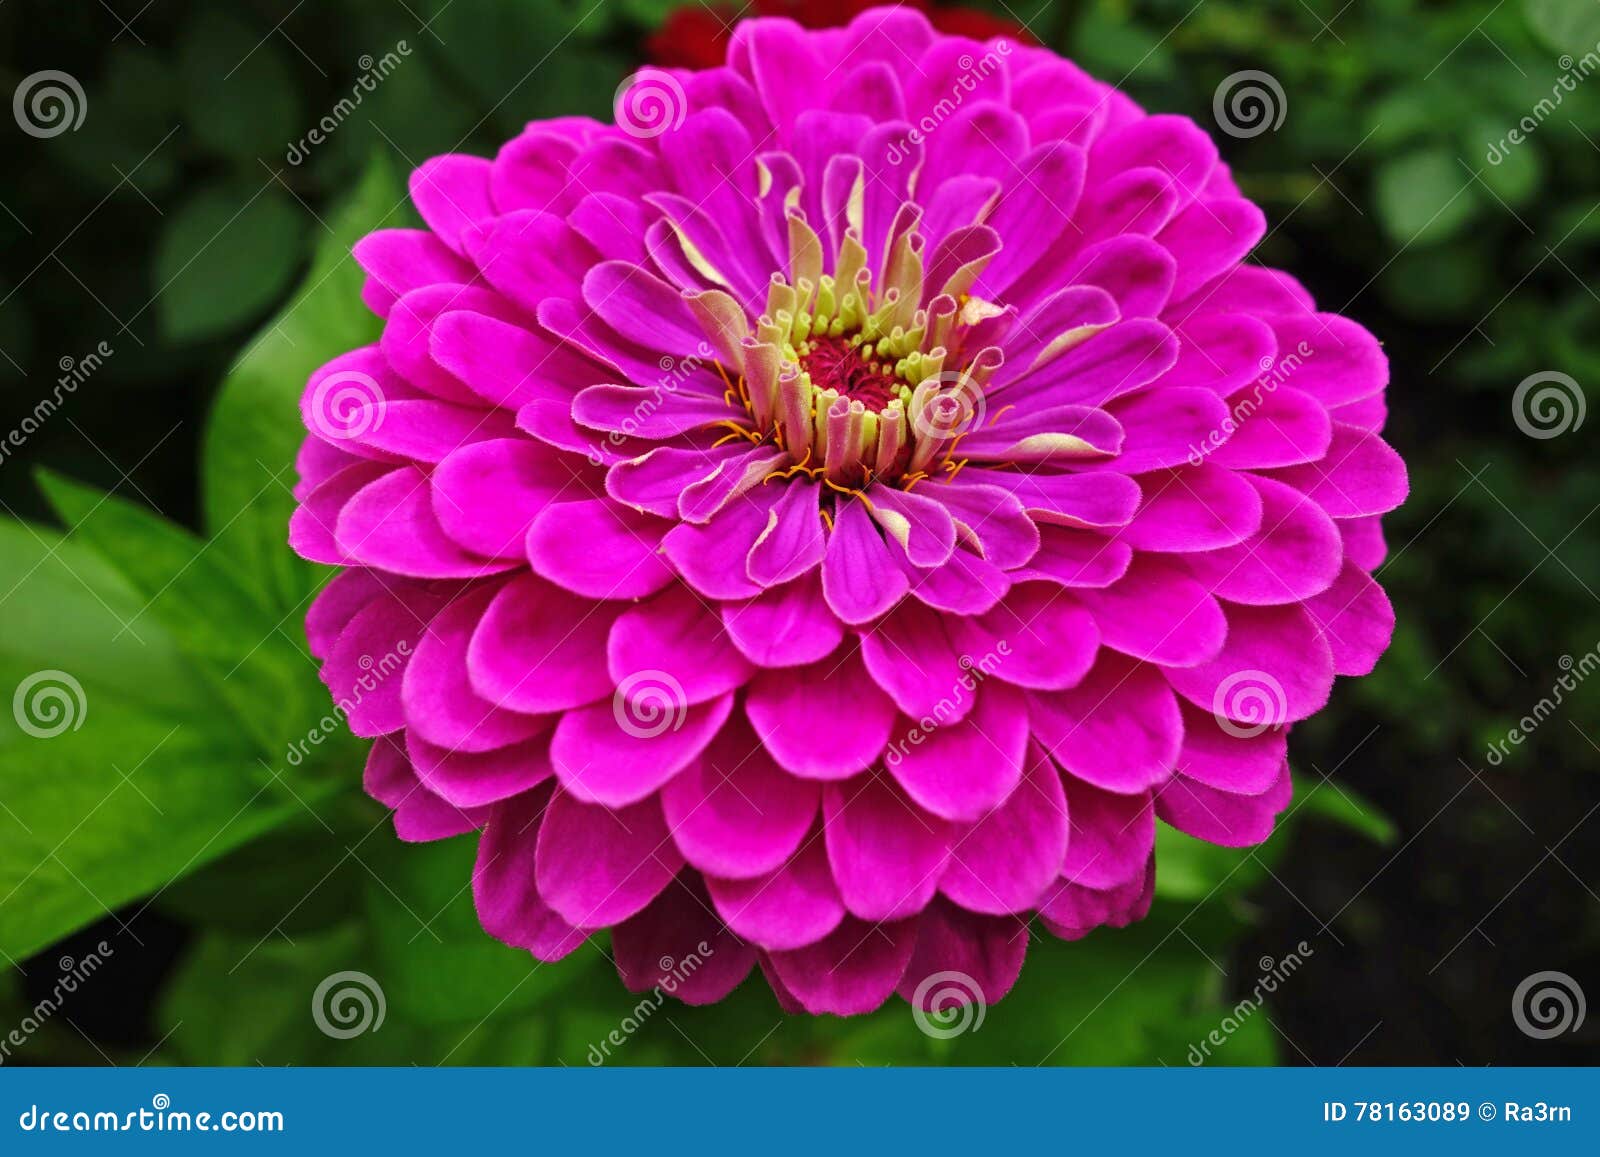 Flor magenta del gerbera imagen de archivo. Imagen de cierre - 78163089